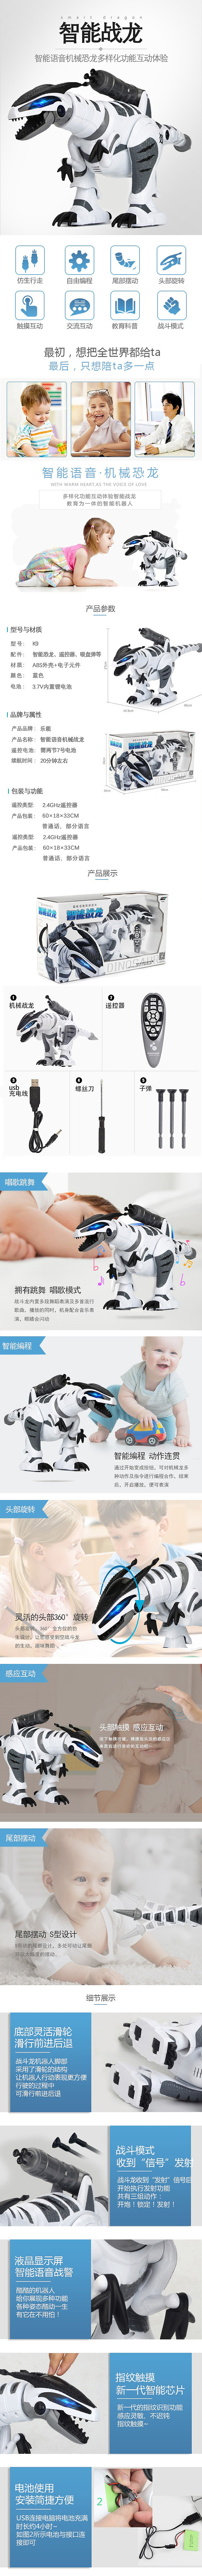 淘宝美工苏叶扁平化  科技风  儿童玩具  智能玩具详情页作品